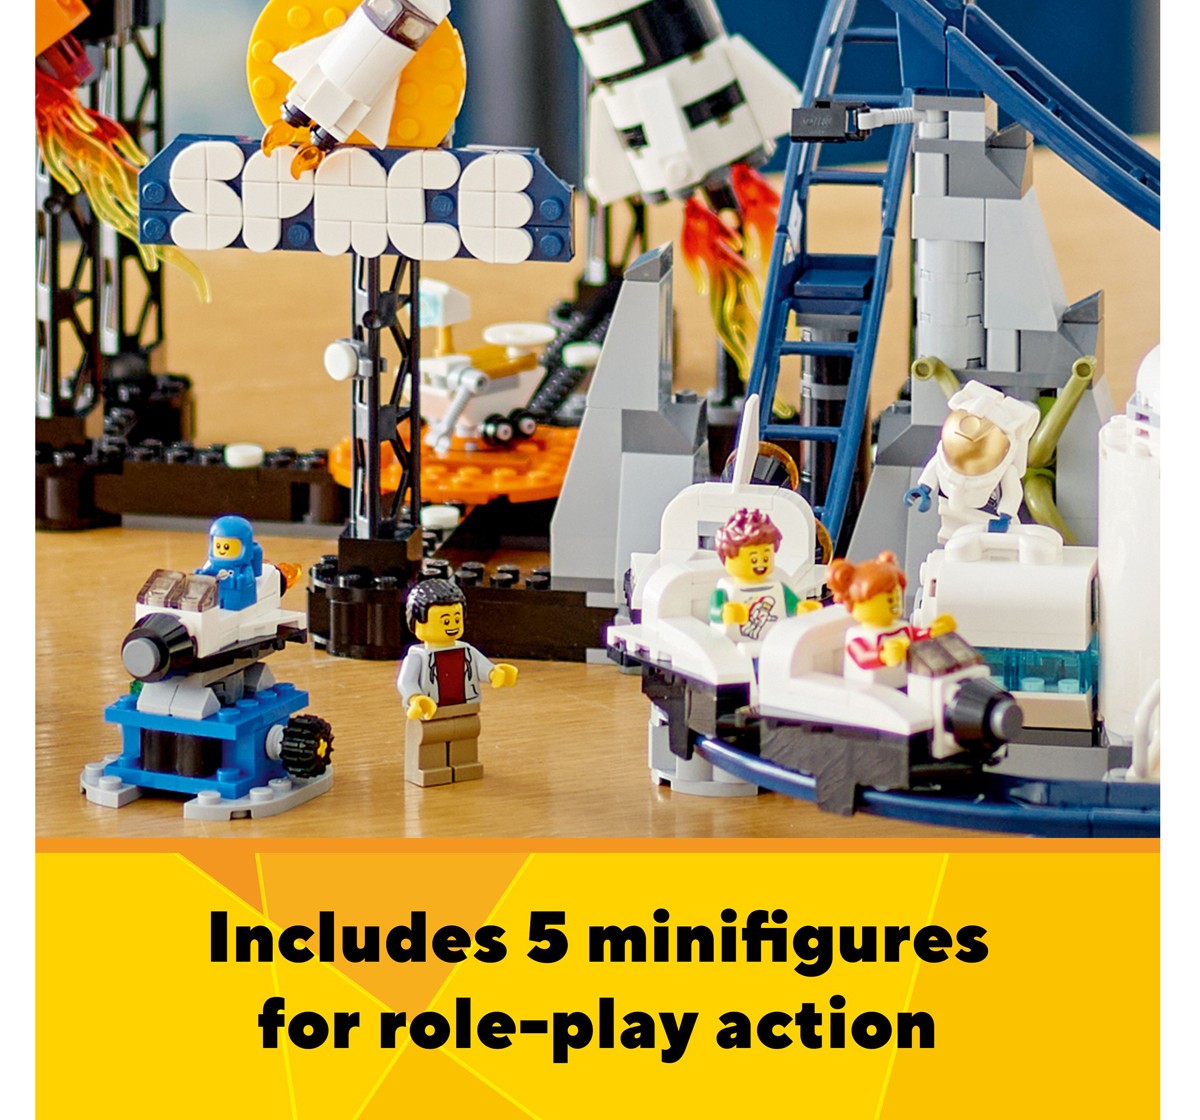 LEGO Creator Space Roller Coaster 31142 Building Toy Set (874 Pieces), 9Y+